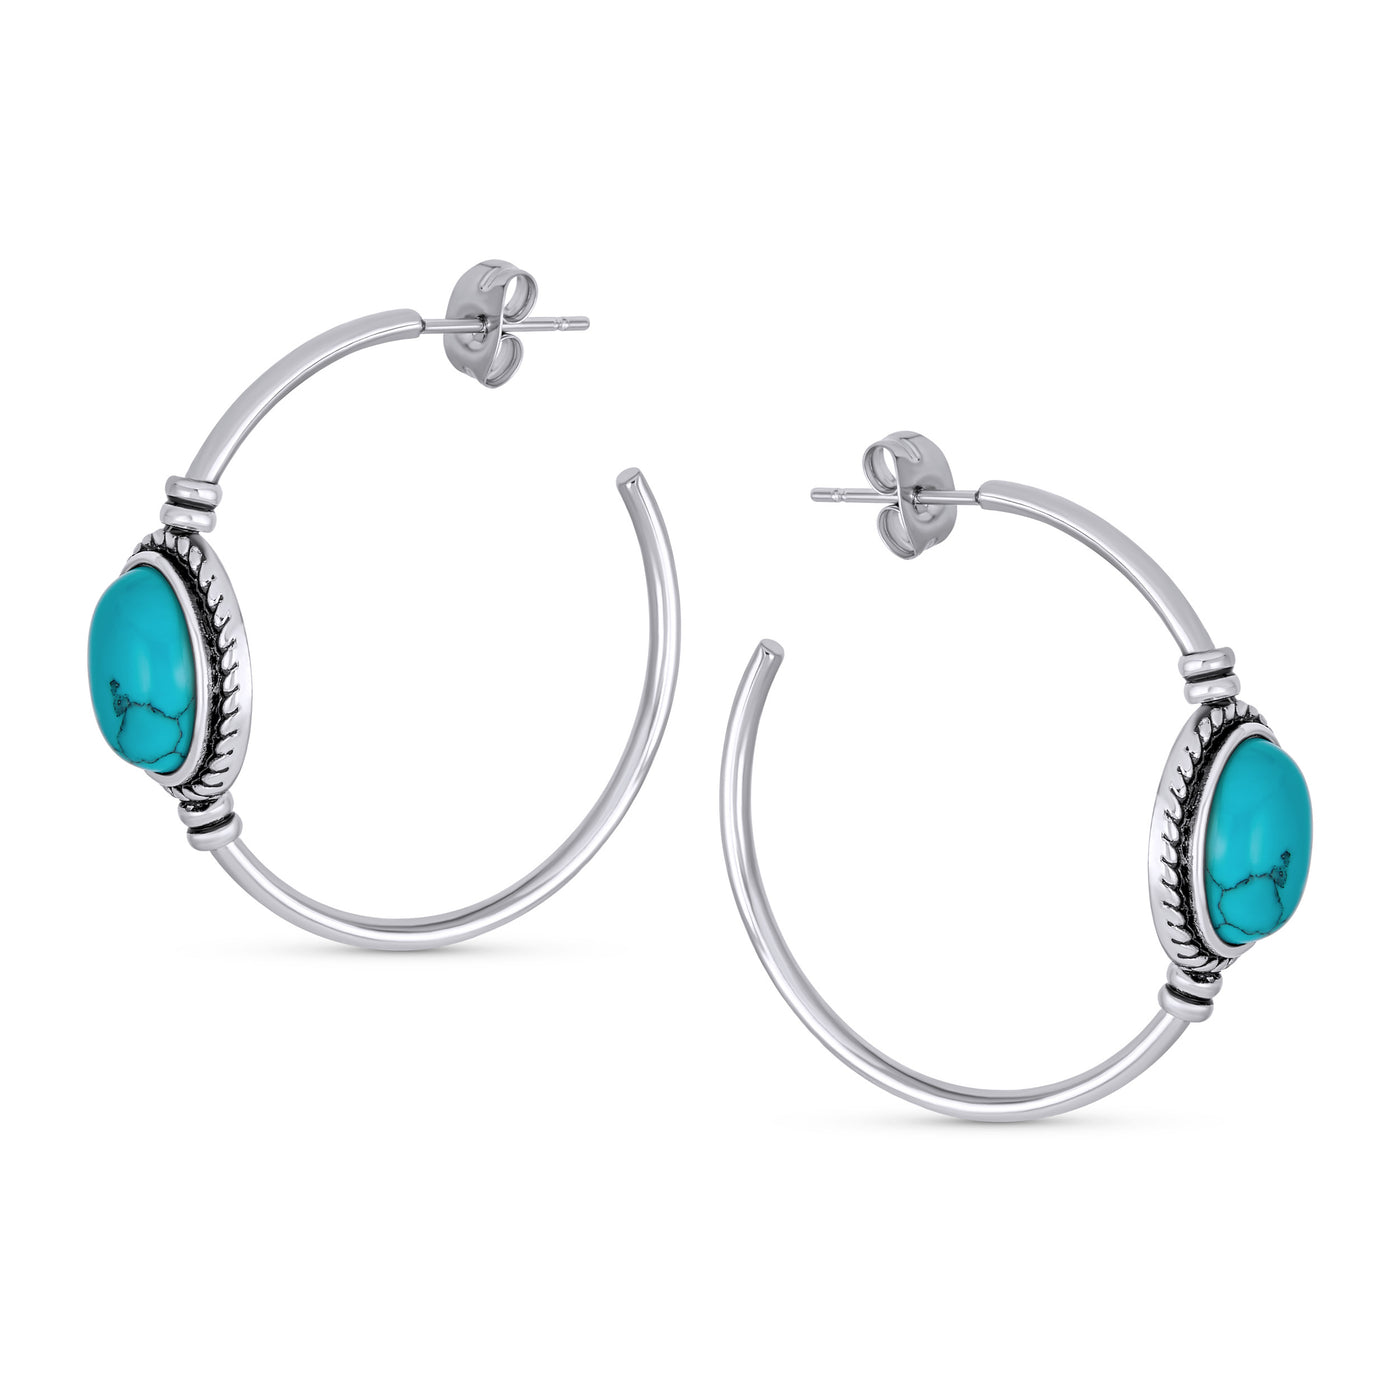 Oval Turquoise Twisted Rope Hoop Stud Western Earrings Stainless Steel